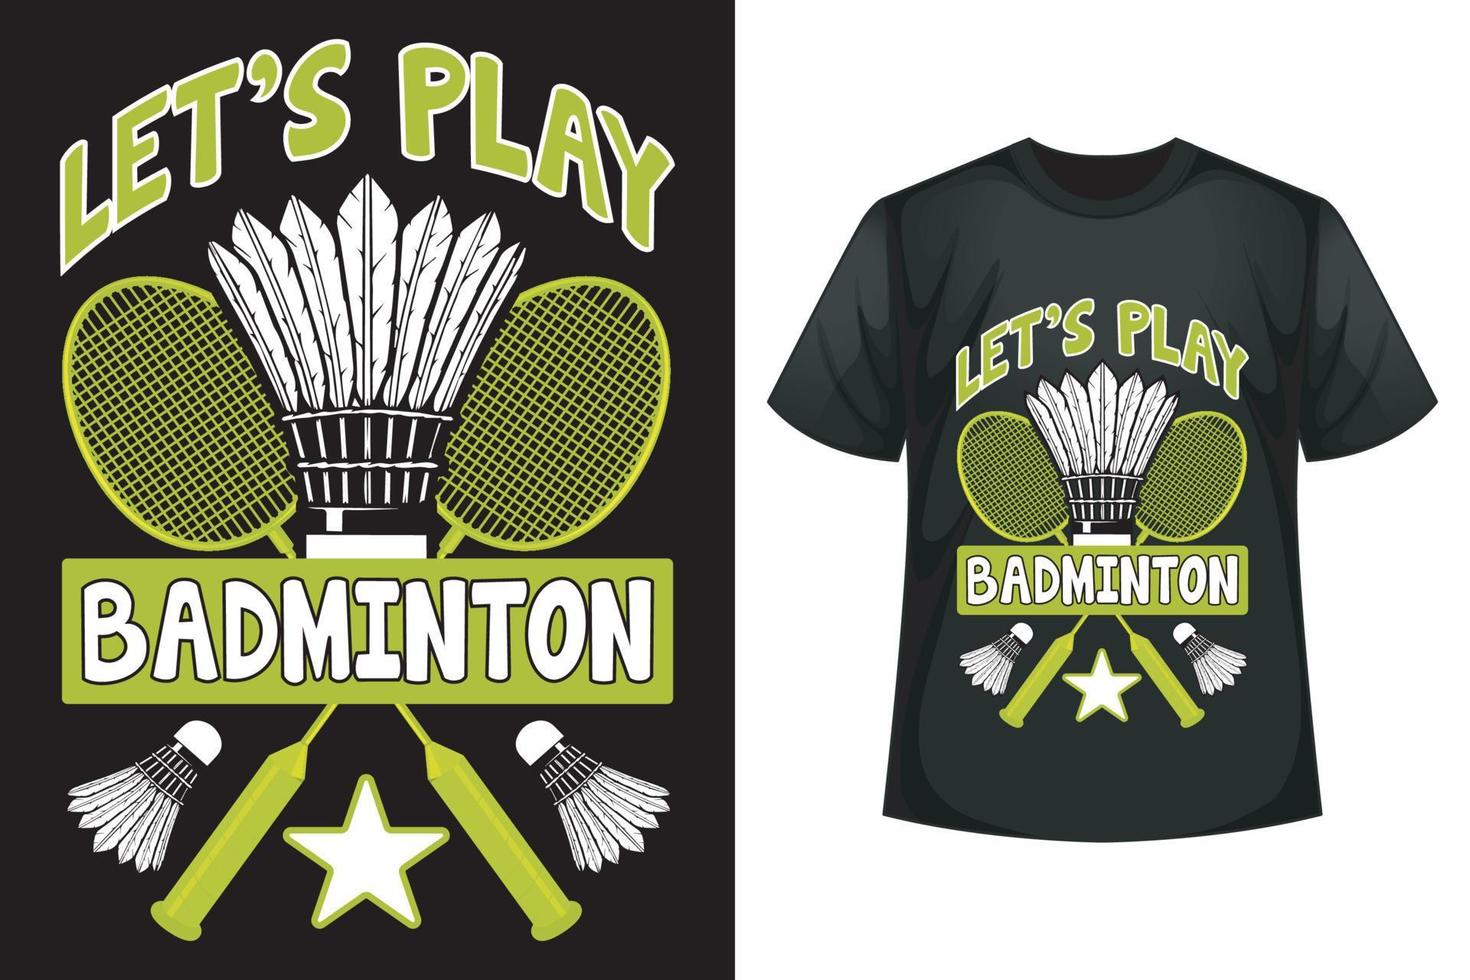 Lassen Sie uns Badminton spielen - Designvorlage für Badminton-T-Shirts vektor